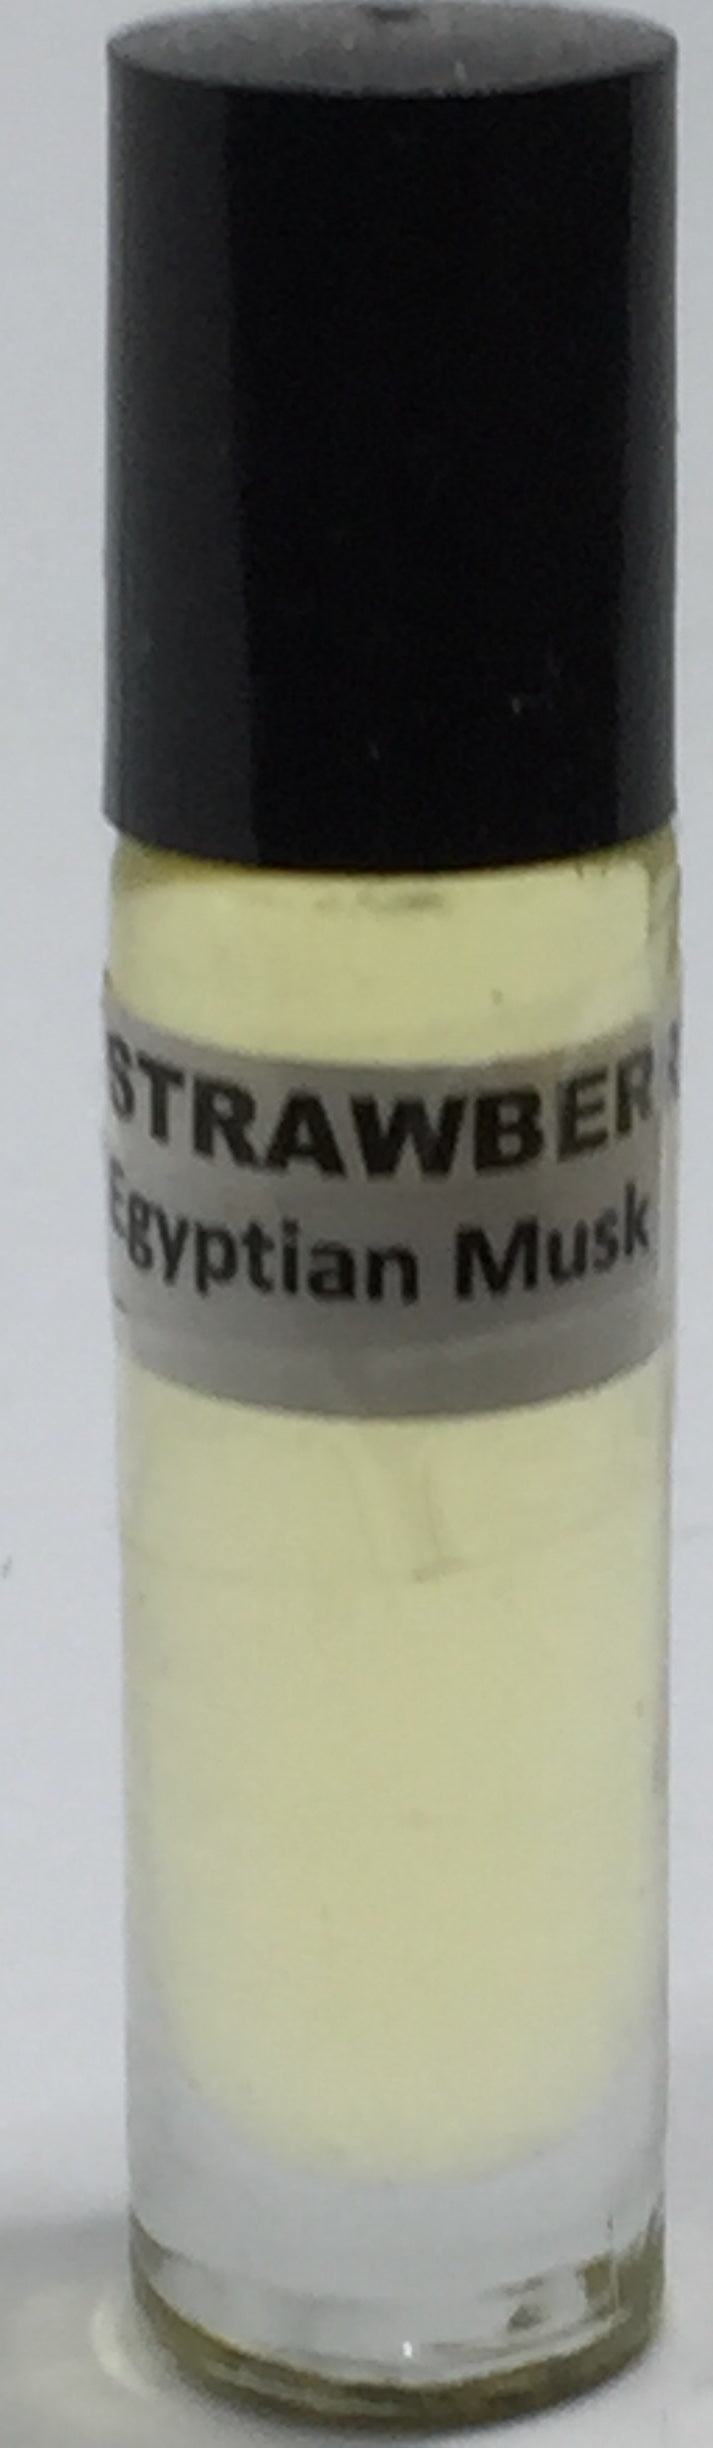 Strawberry Egyptian Musk: Fragrance(Perfume)Body Oil Unisex